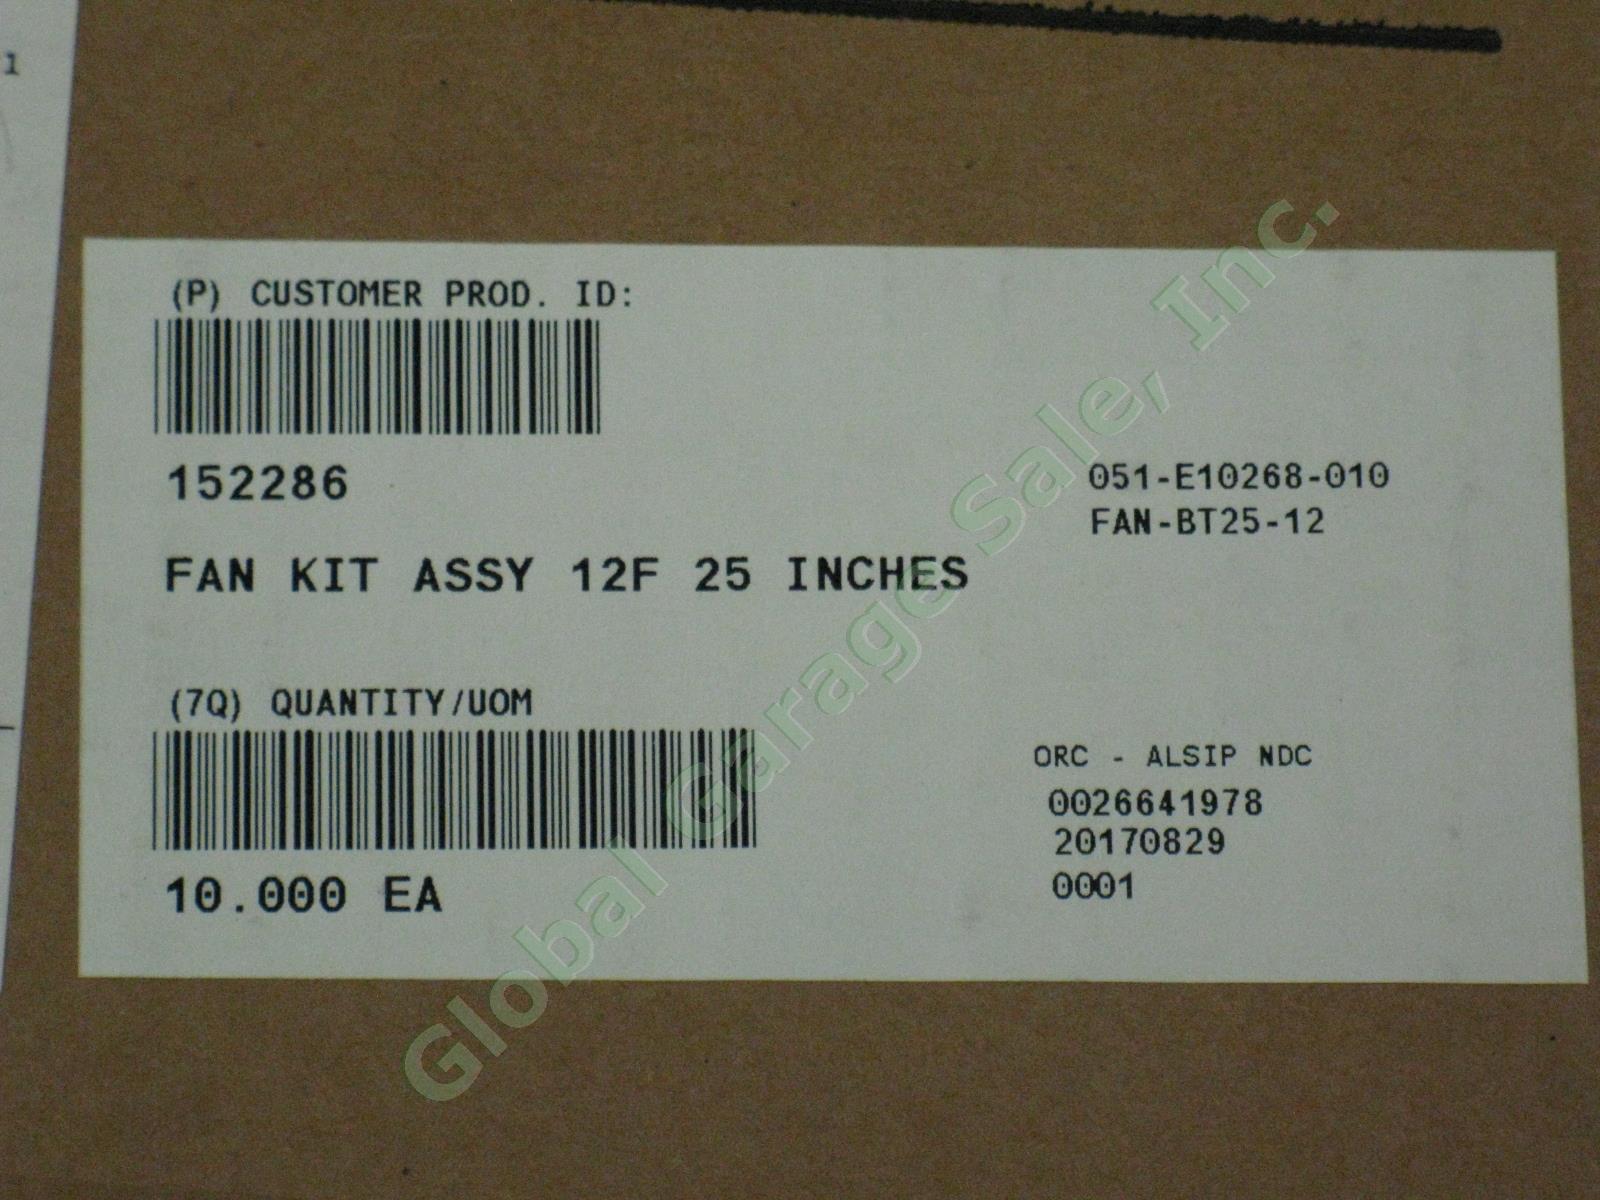 10 NEW Sealed Corning Buffer Tube Fan-Out Kits FAN-BT25-12 Fiber 25" Inches Legs 2